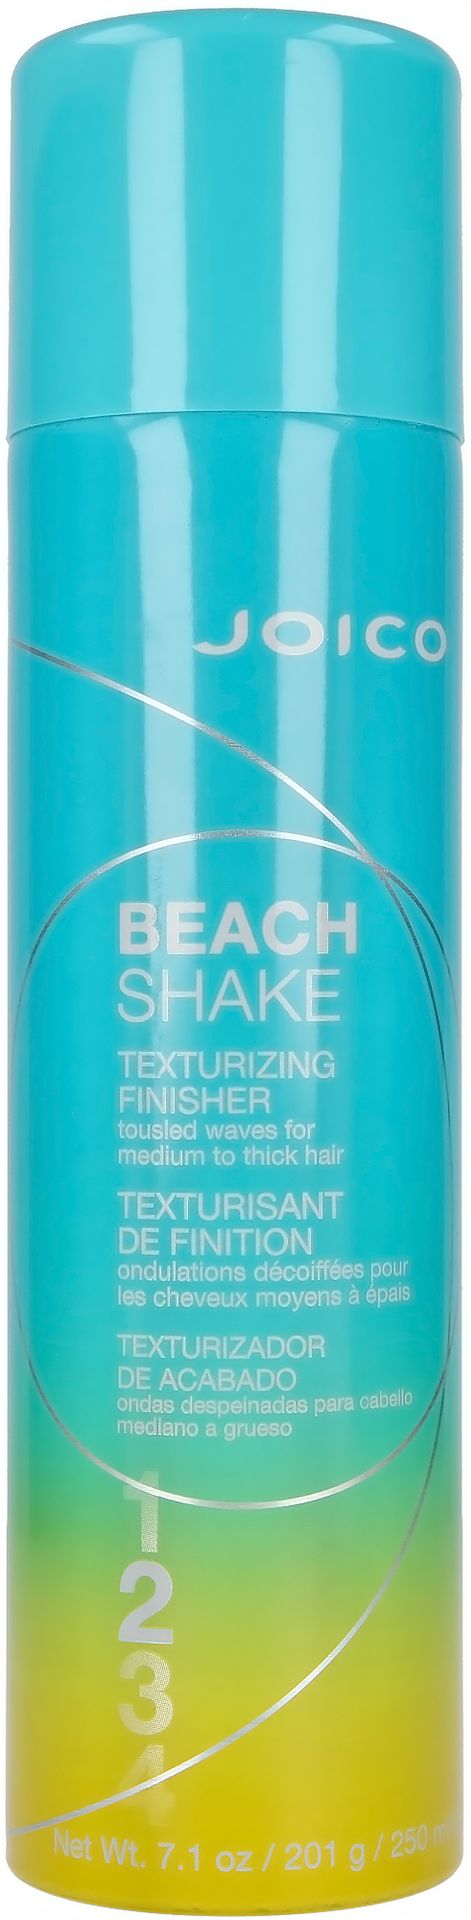 Joico Beach Shake Texturizing Finisher 250 ml - spray do stylizacji włosów 250 ml